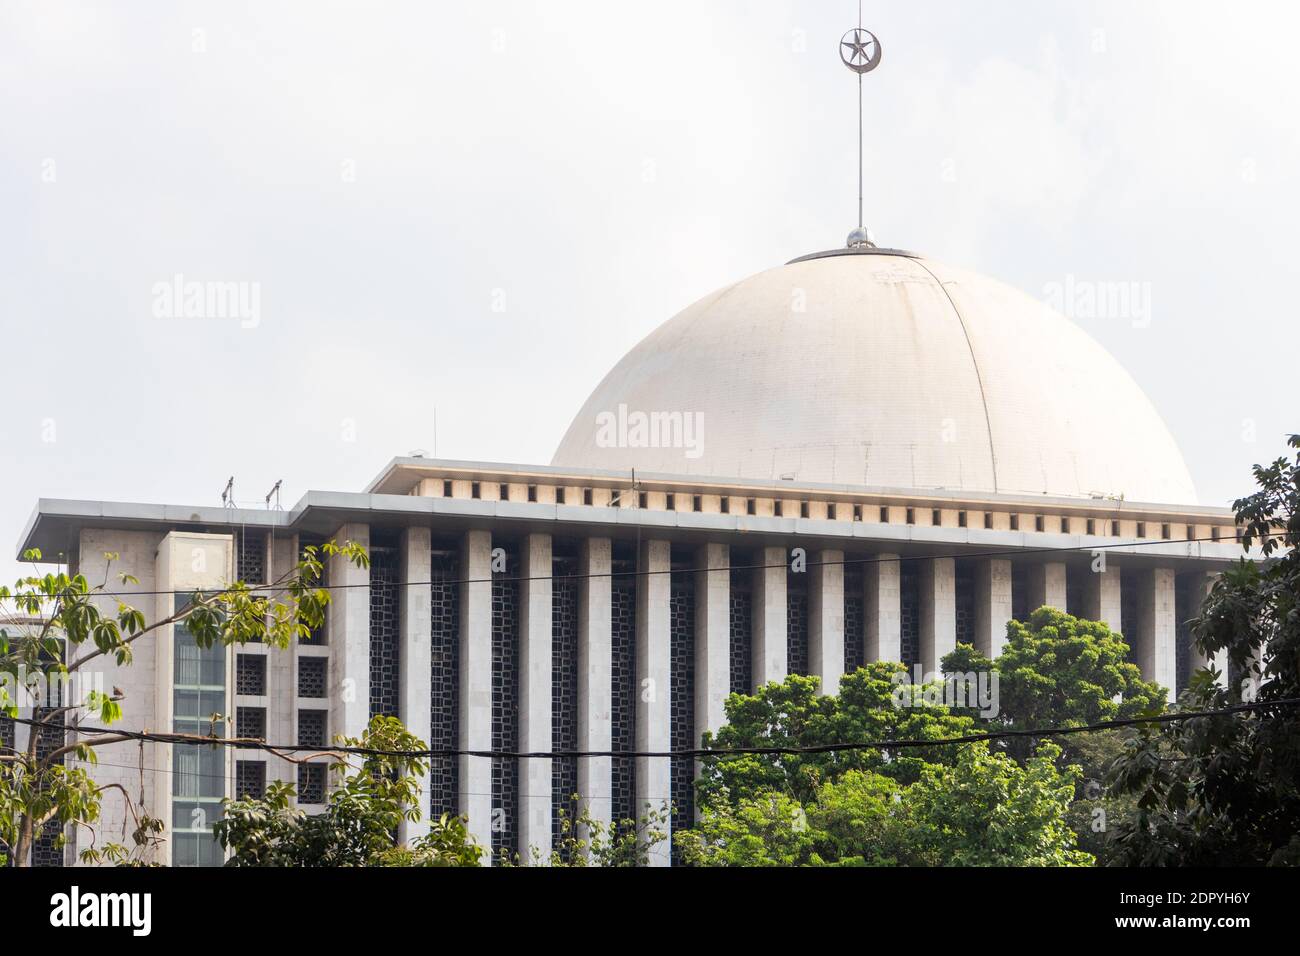 La mosquée Istiqlal est la plus grande mosquée d'Asie du Sud-est située à Jakarta, en Indonésie Banque D'Images